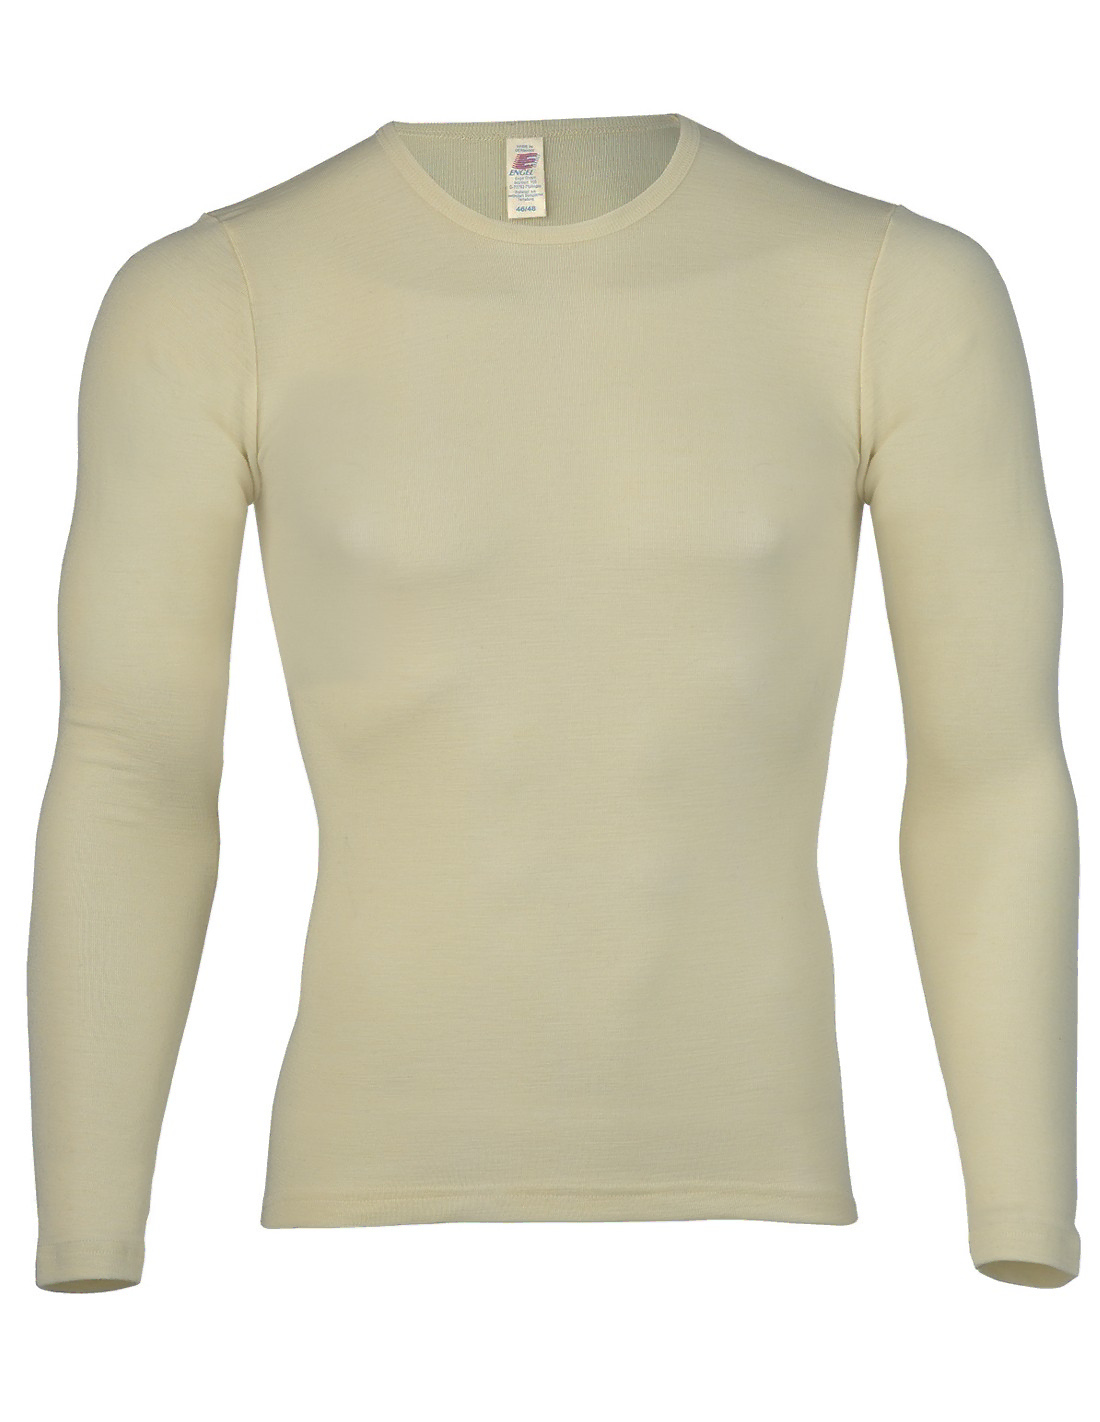 Image of Heren Shirt Lange Mouw Zijde Wol Engel Natur, Kleur Gebroken wit, Maat 50/52 - Large